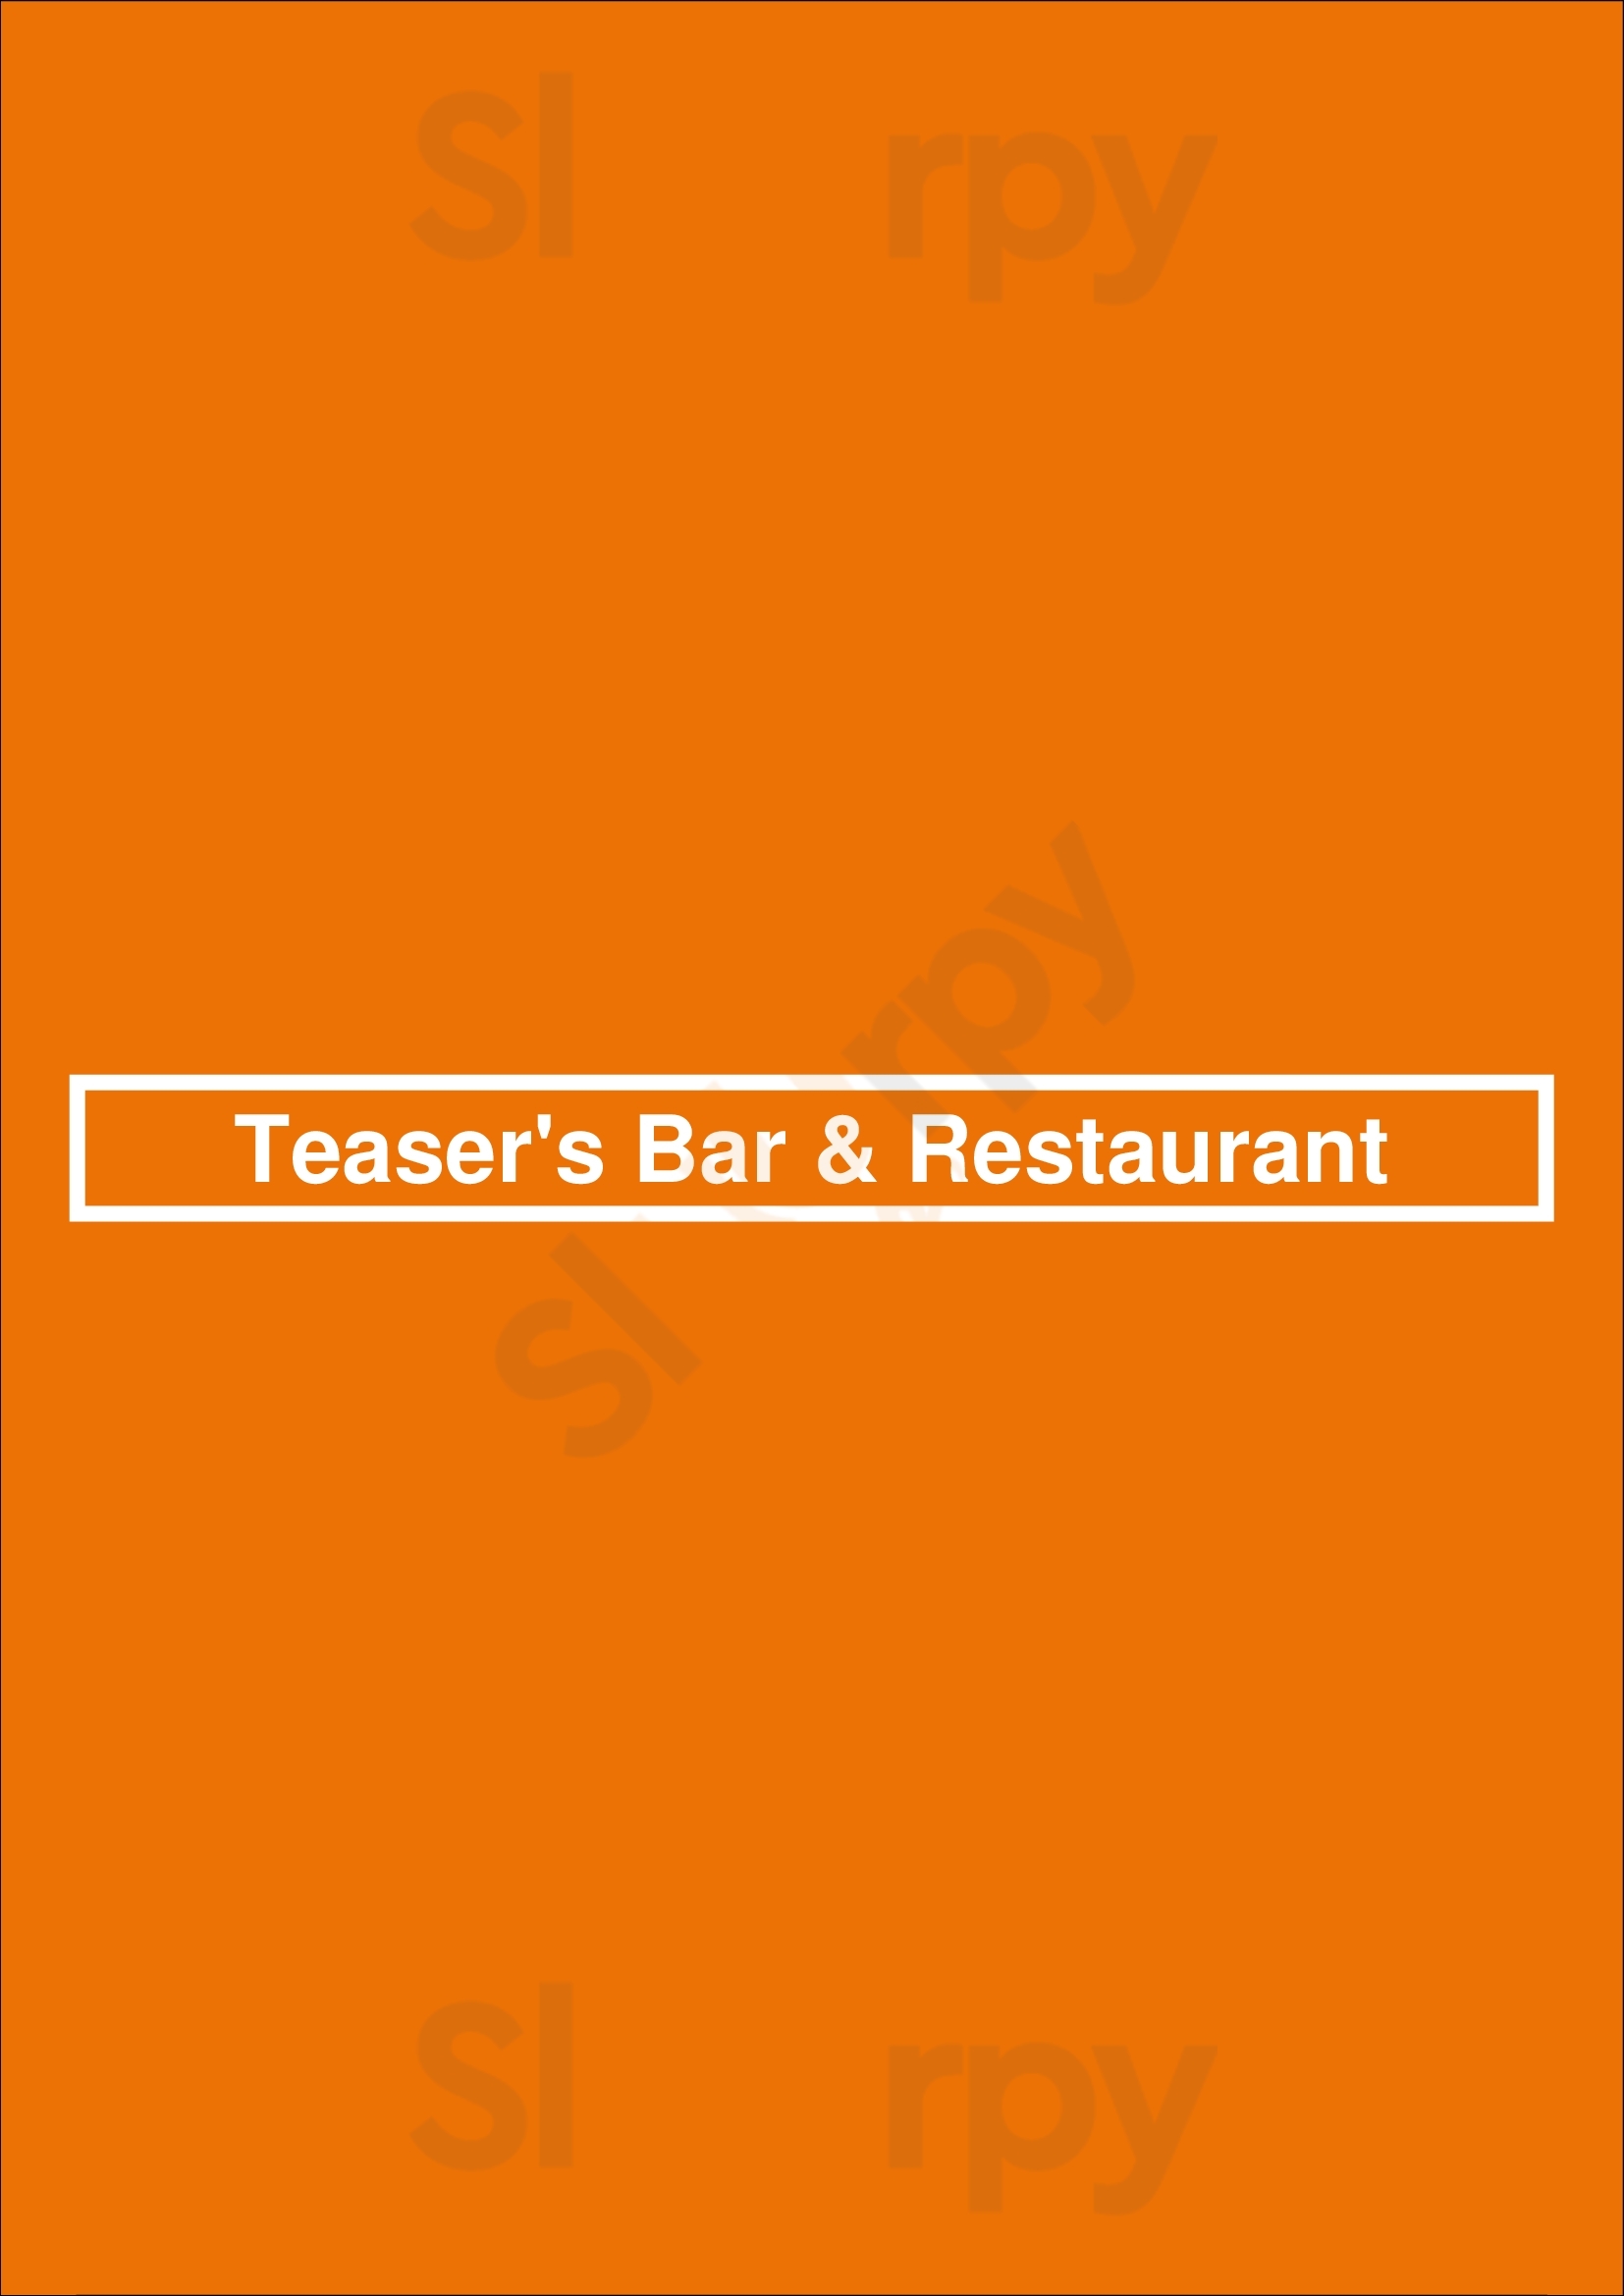 Teaser's Bar & Restaurant Albufeira Menu - 1